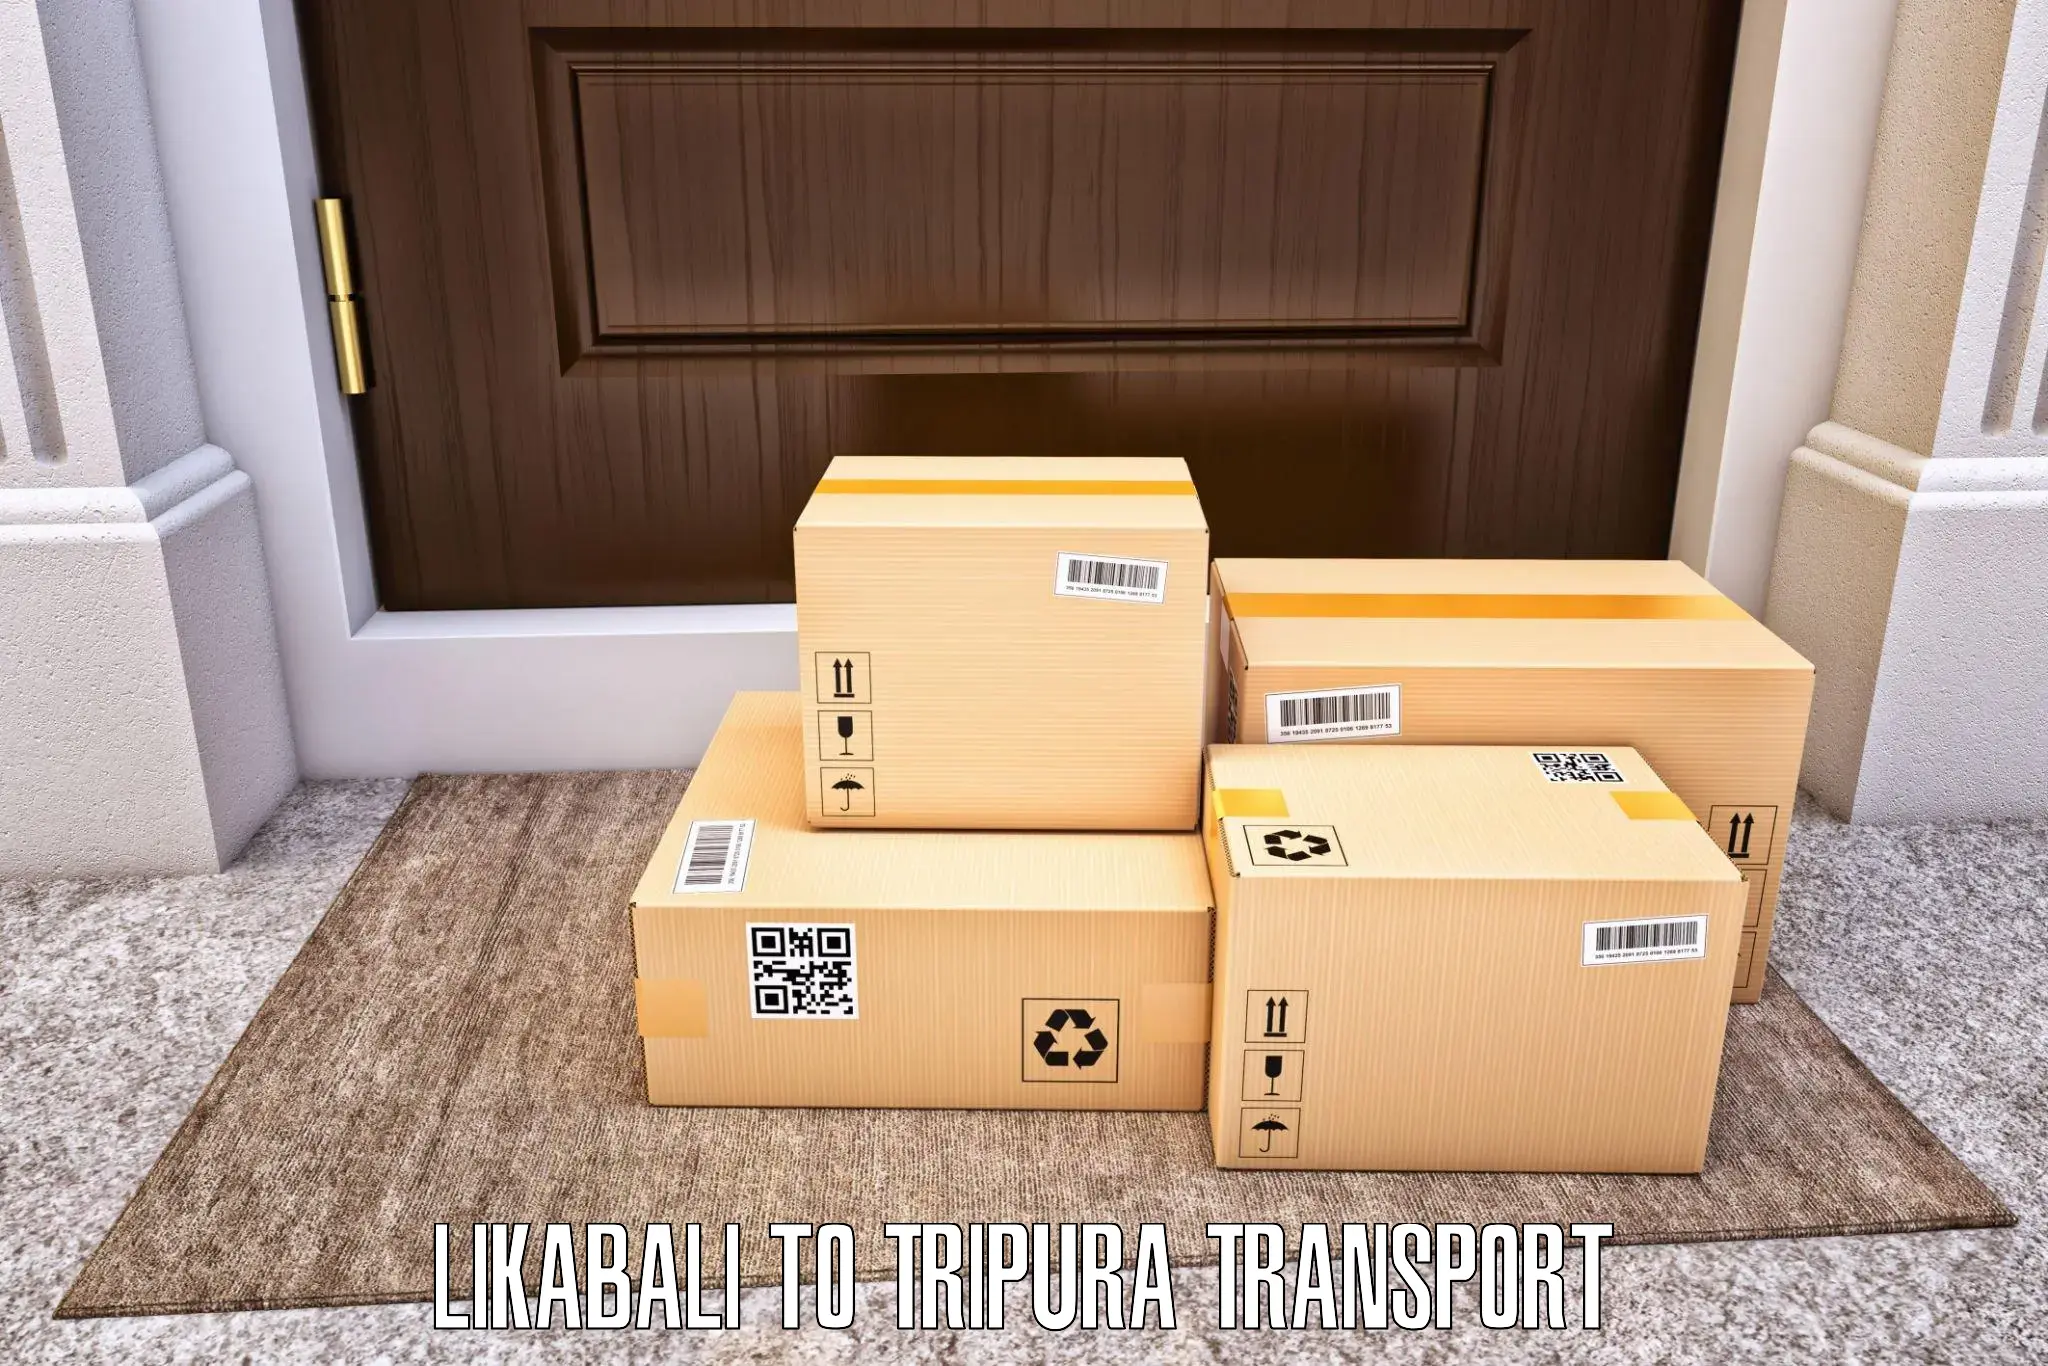 Online transport booking Likabali to Bishalgarh